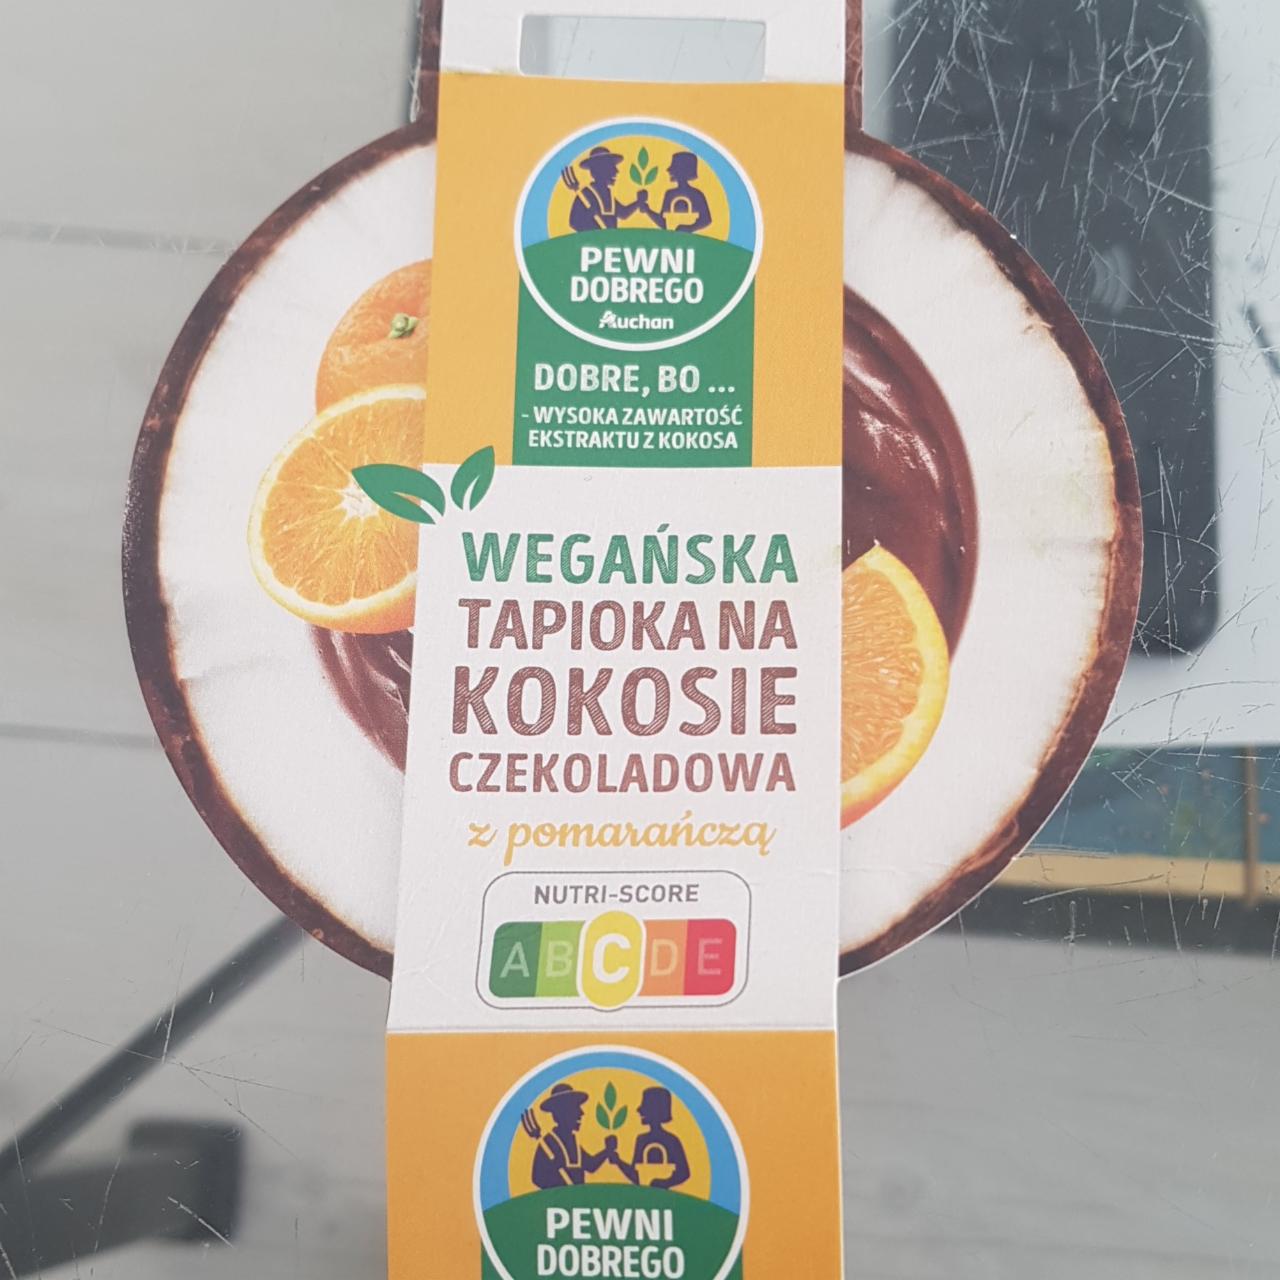 Zdjęcia - Wegańska tapioka na kokosie z pomarańczą Pewni dobrego